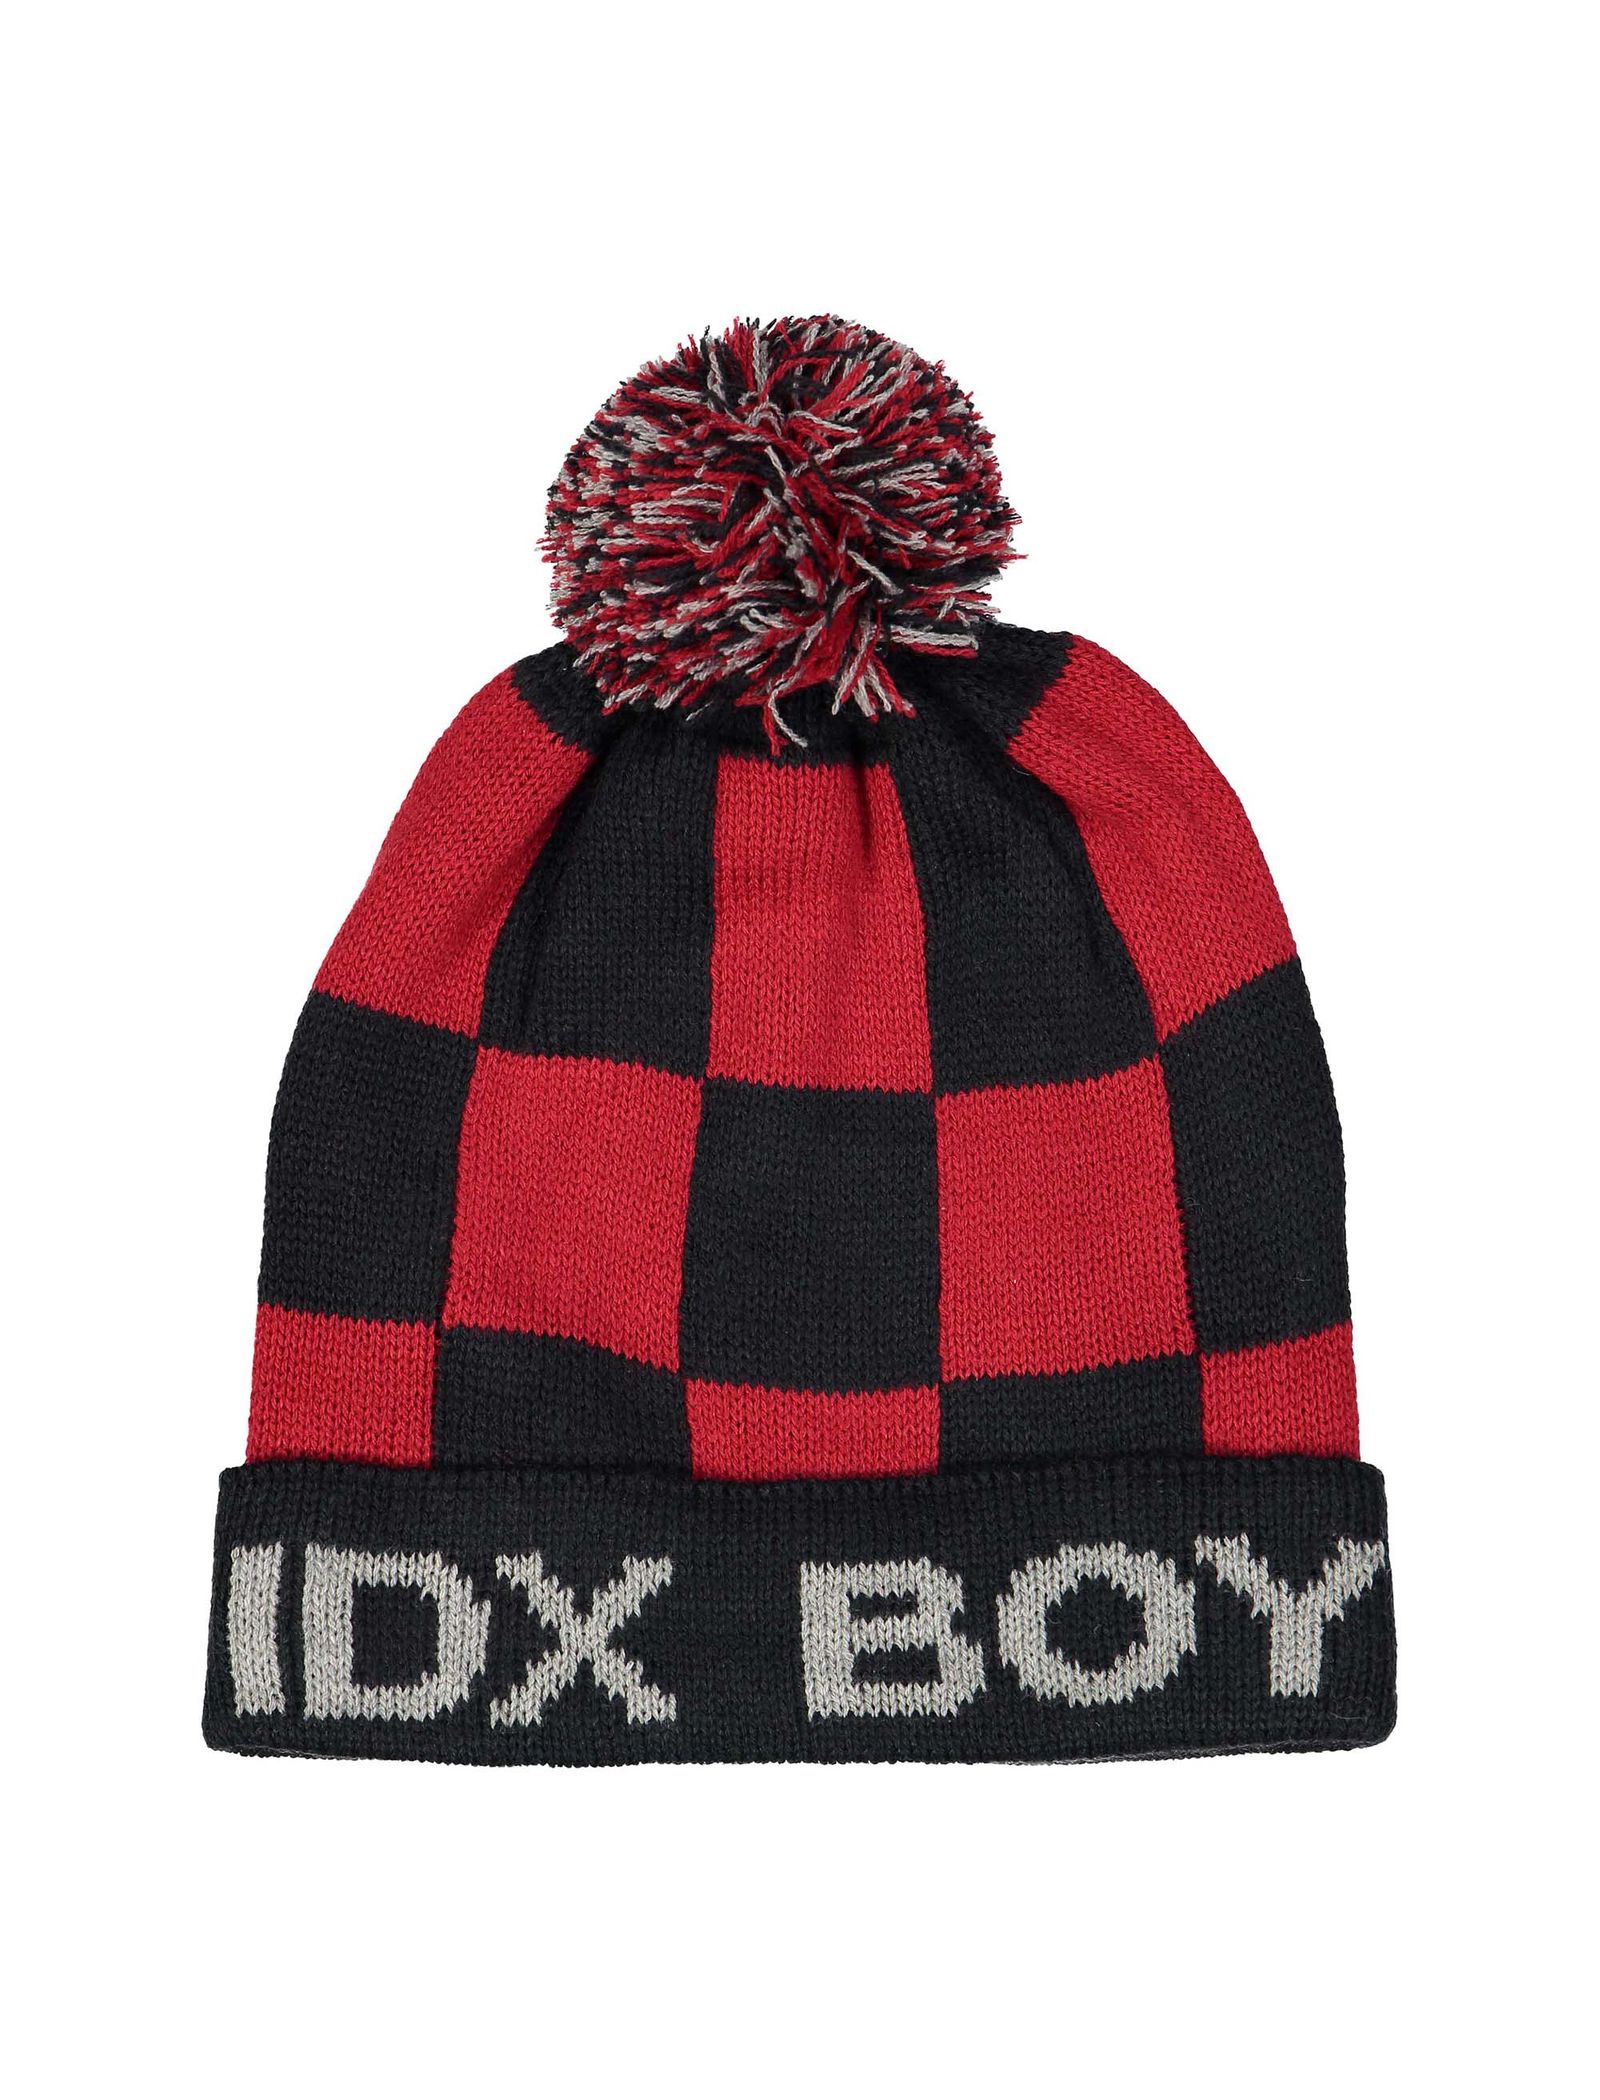 کلاه بافتنی بانی پسرانه - ایدکس - قرمز و سرمه اي - 1